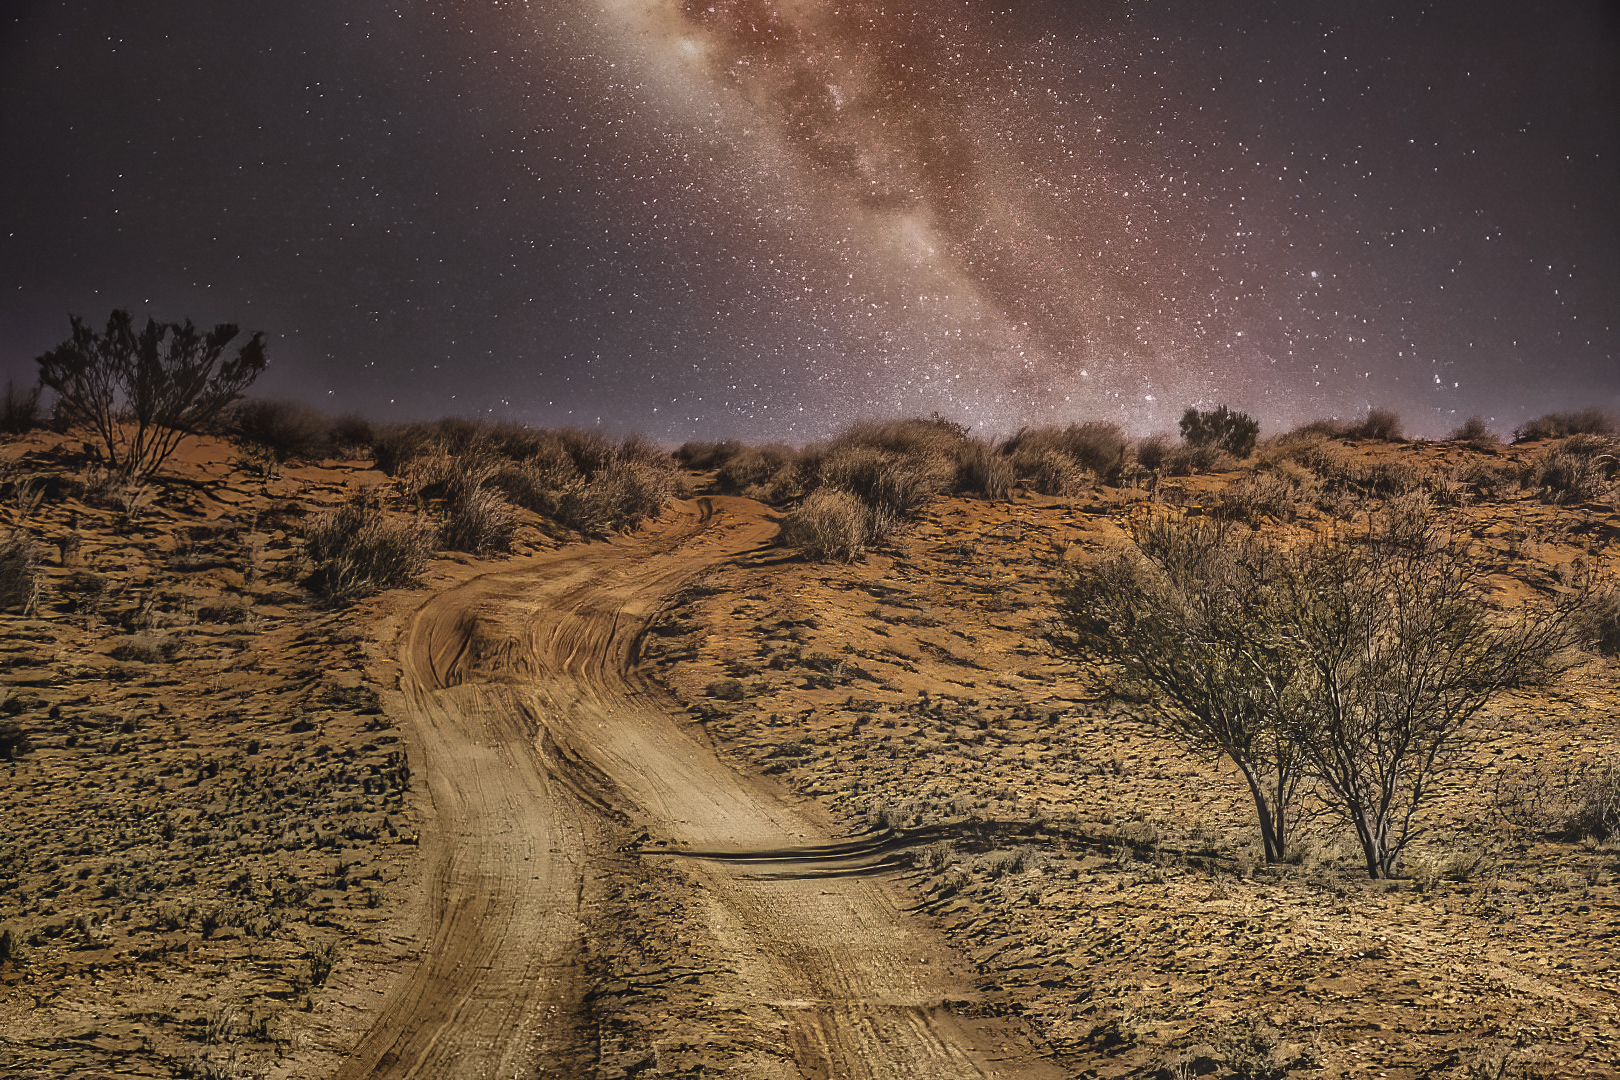 Deer Julie Desert by Night 9 June 2021   High Key / Low Key